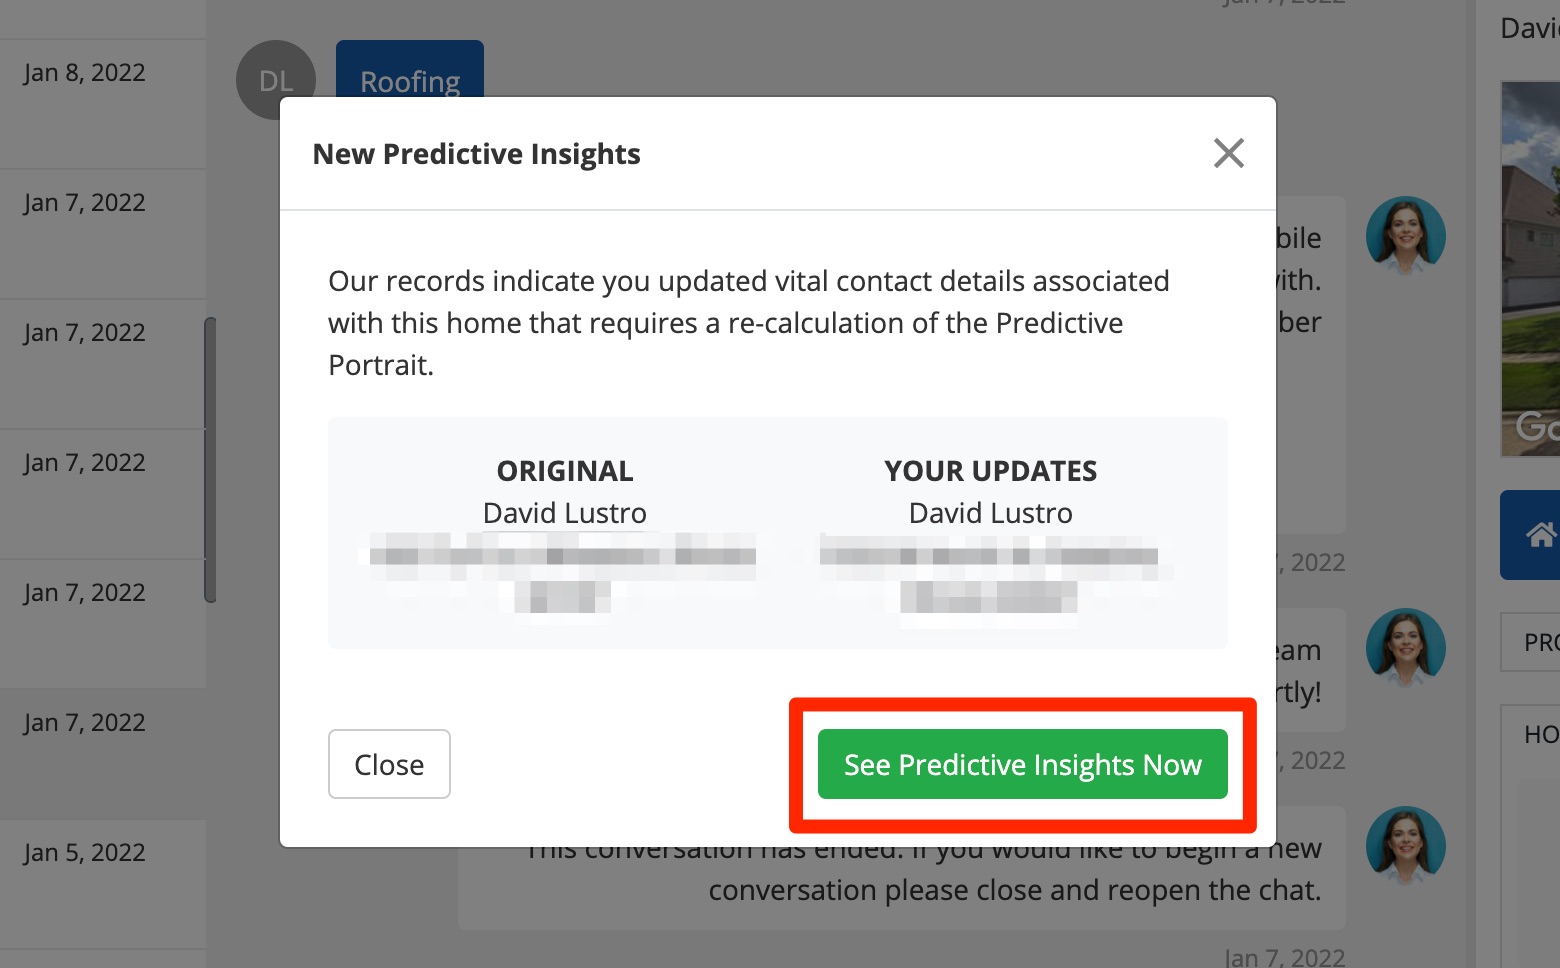 click_see_predictive_insights.jpg